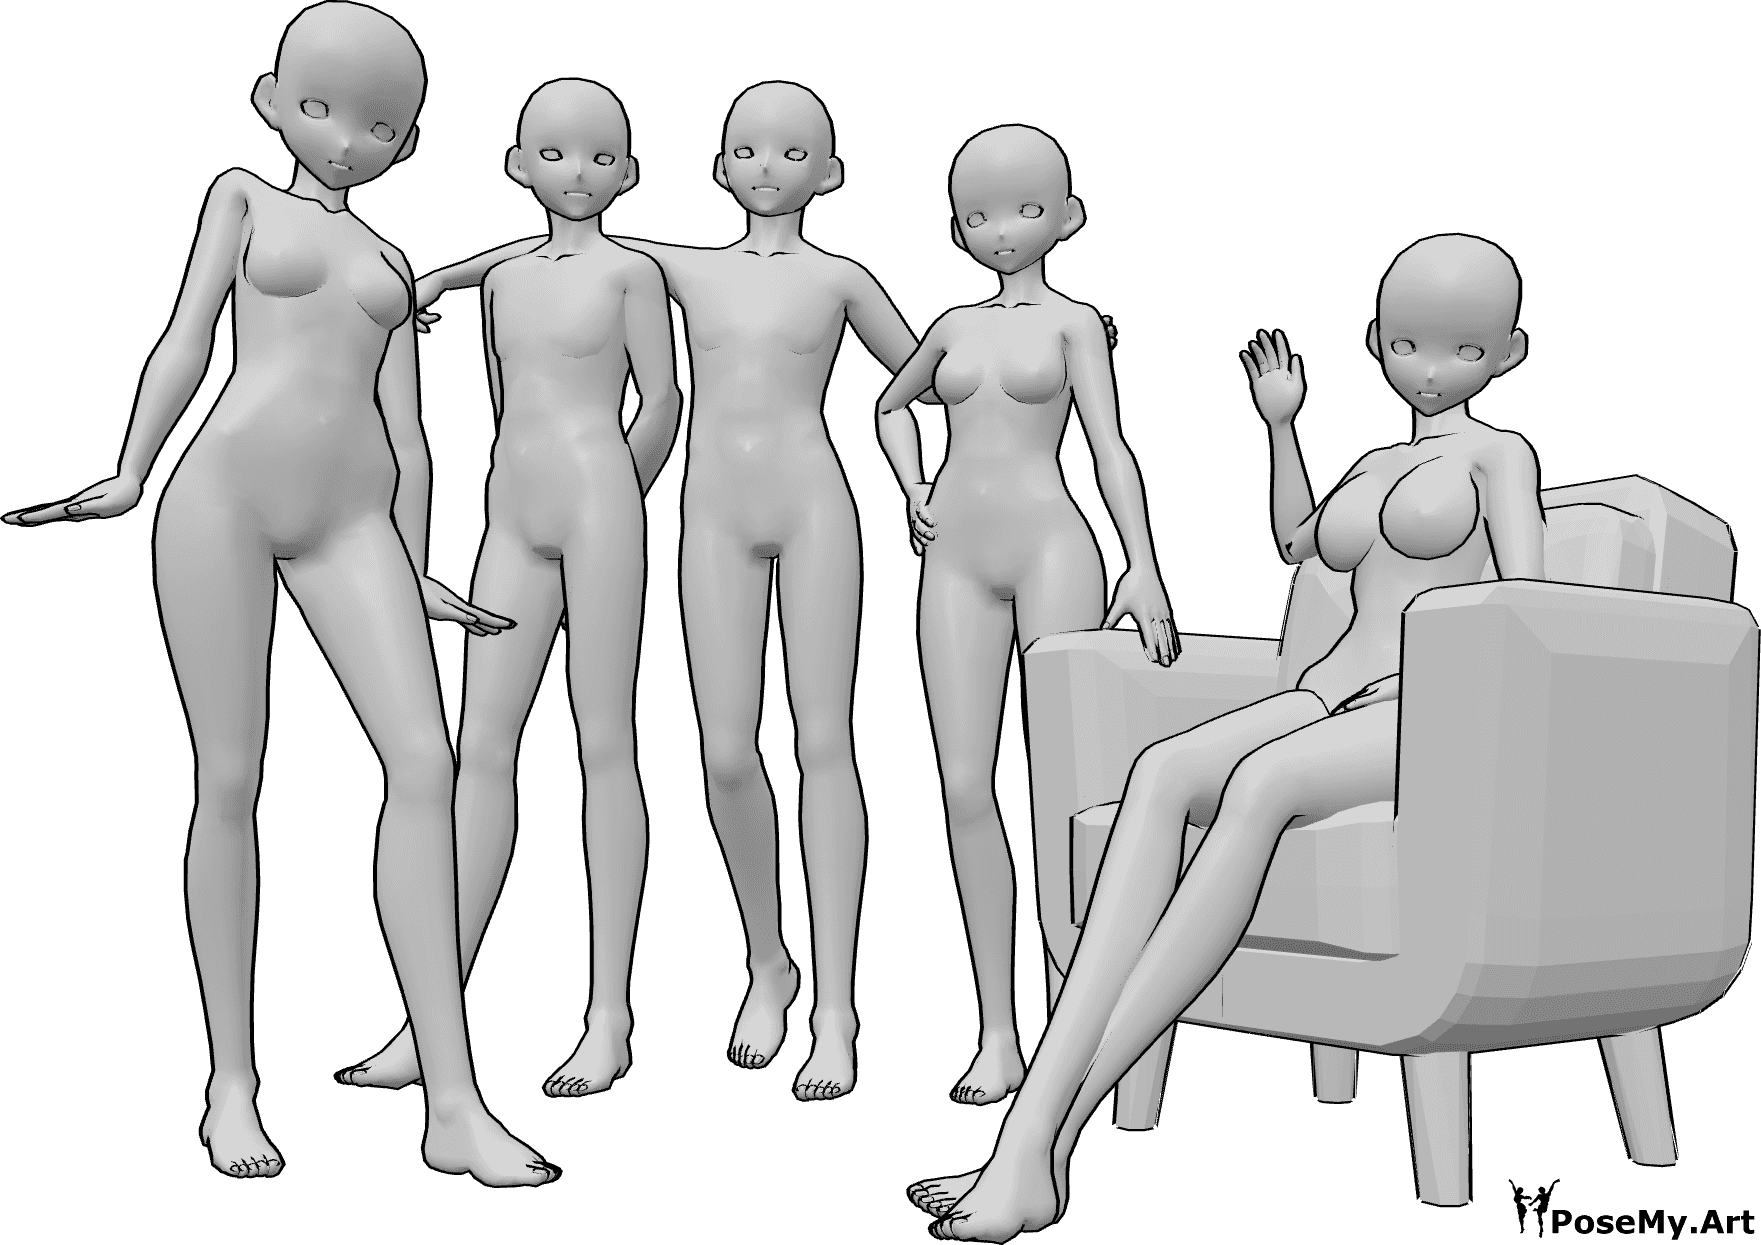 Posen-Referenz- Anime Gruppe Pose - Eine Gruppe von fünf weiblichen und männlichen Animateuren posiert für ein Gruppenfoto, sitzend und stehend